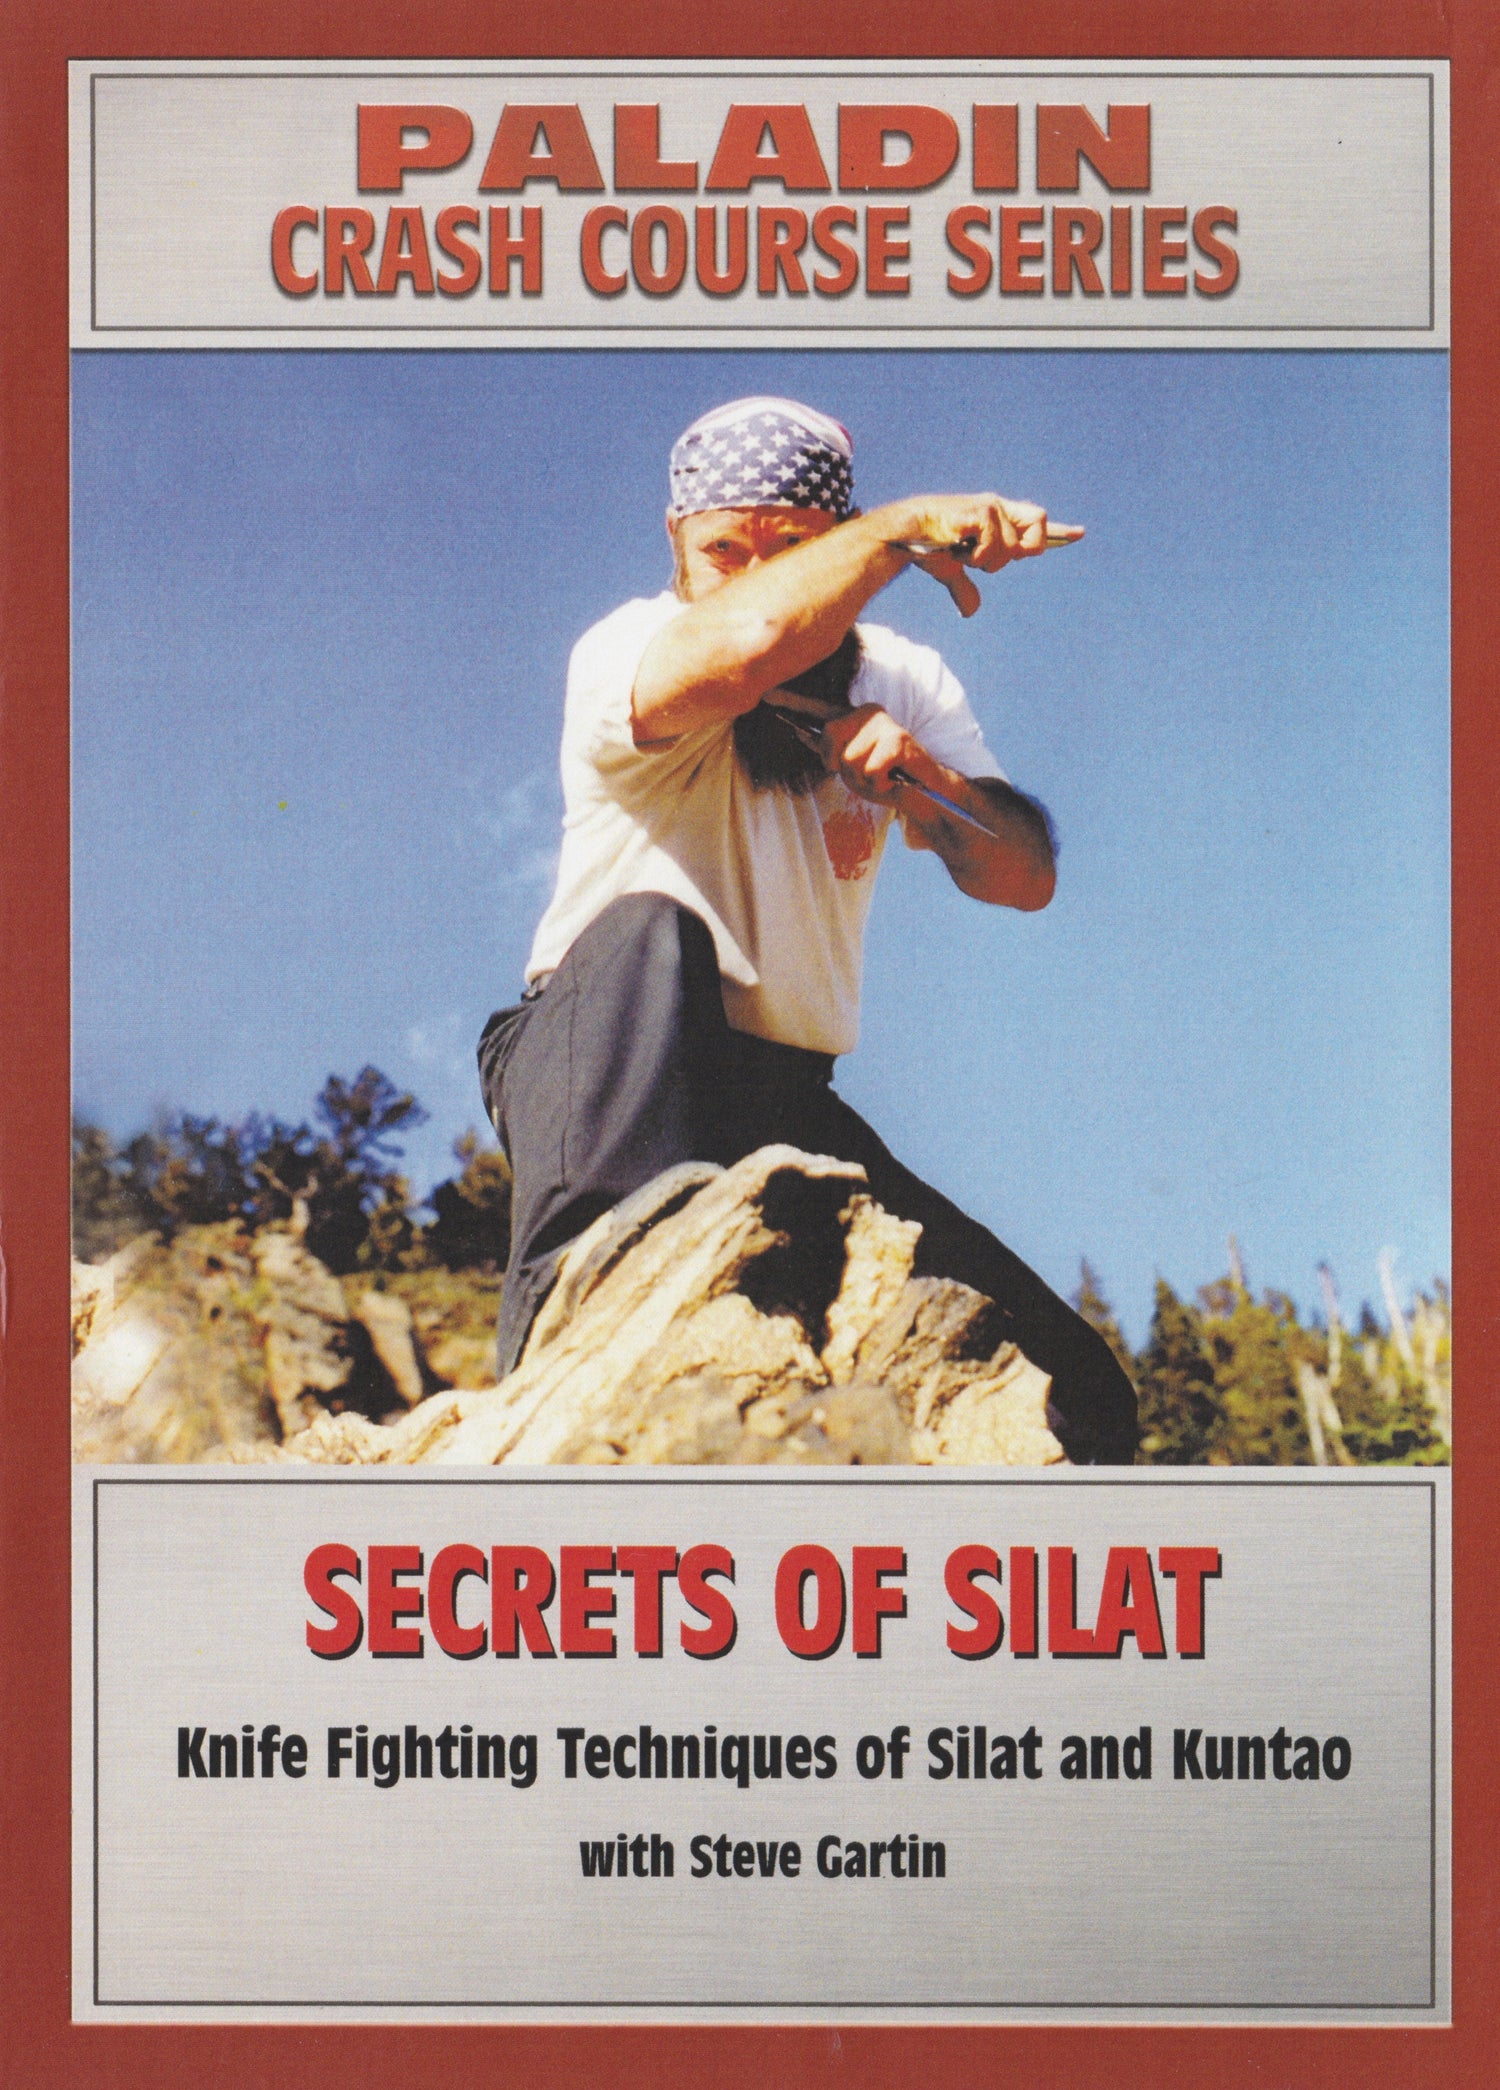 シラットの秘密: シラットとクンタオのナイフ格闘テクニック DVD by Steve Gartin (中古)